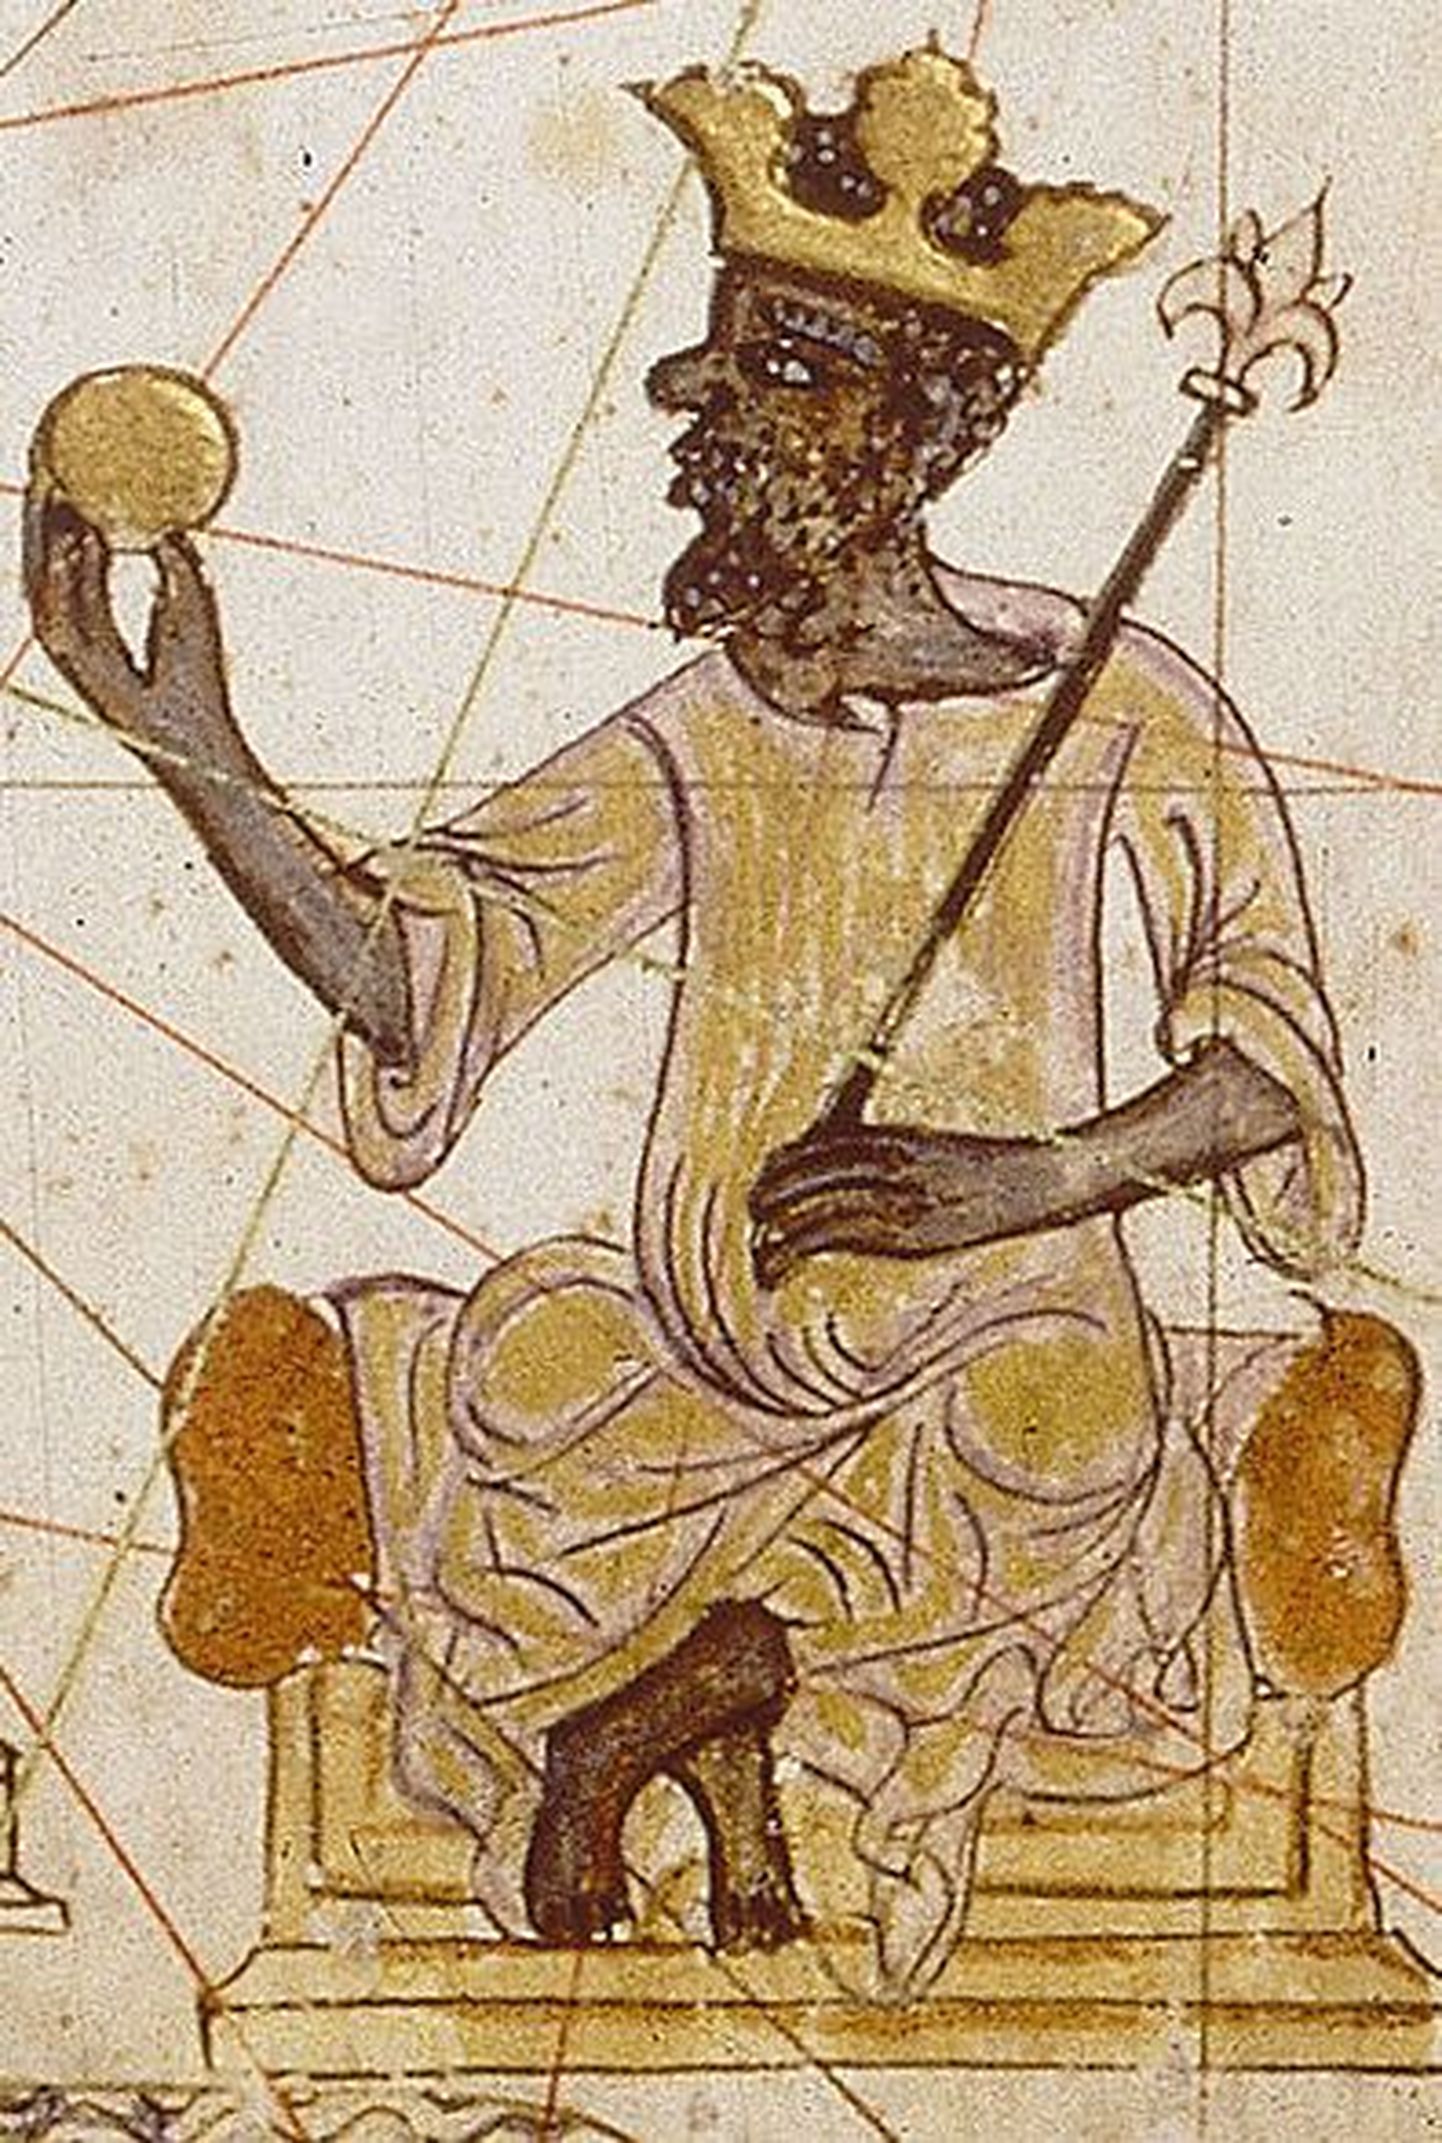 Maailma rikkaim inimene on 14. sajandi Lääne-Aafrika kuningas